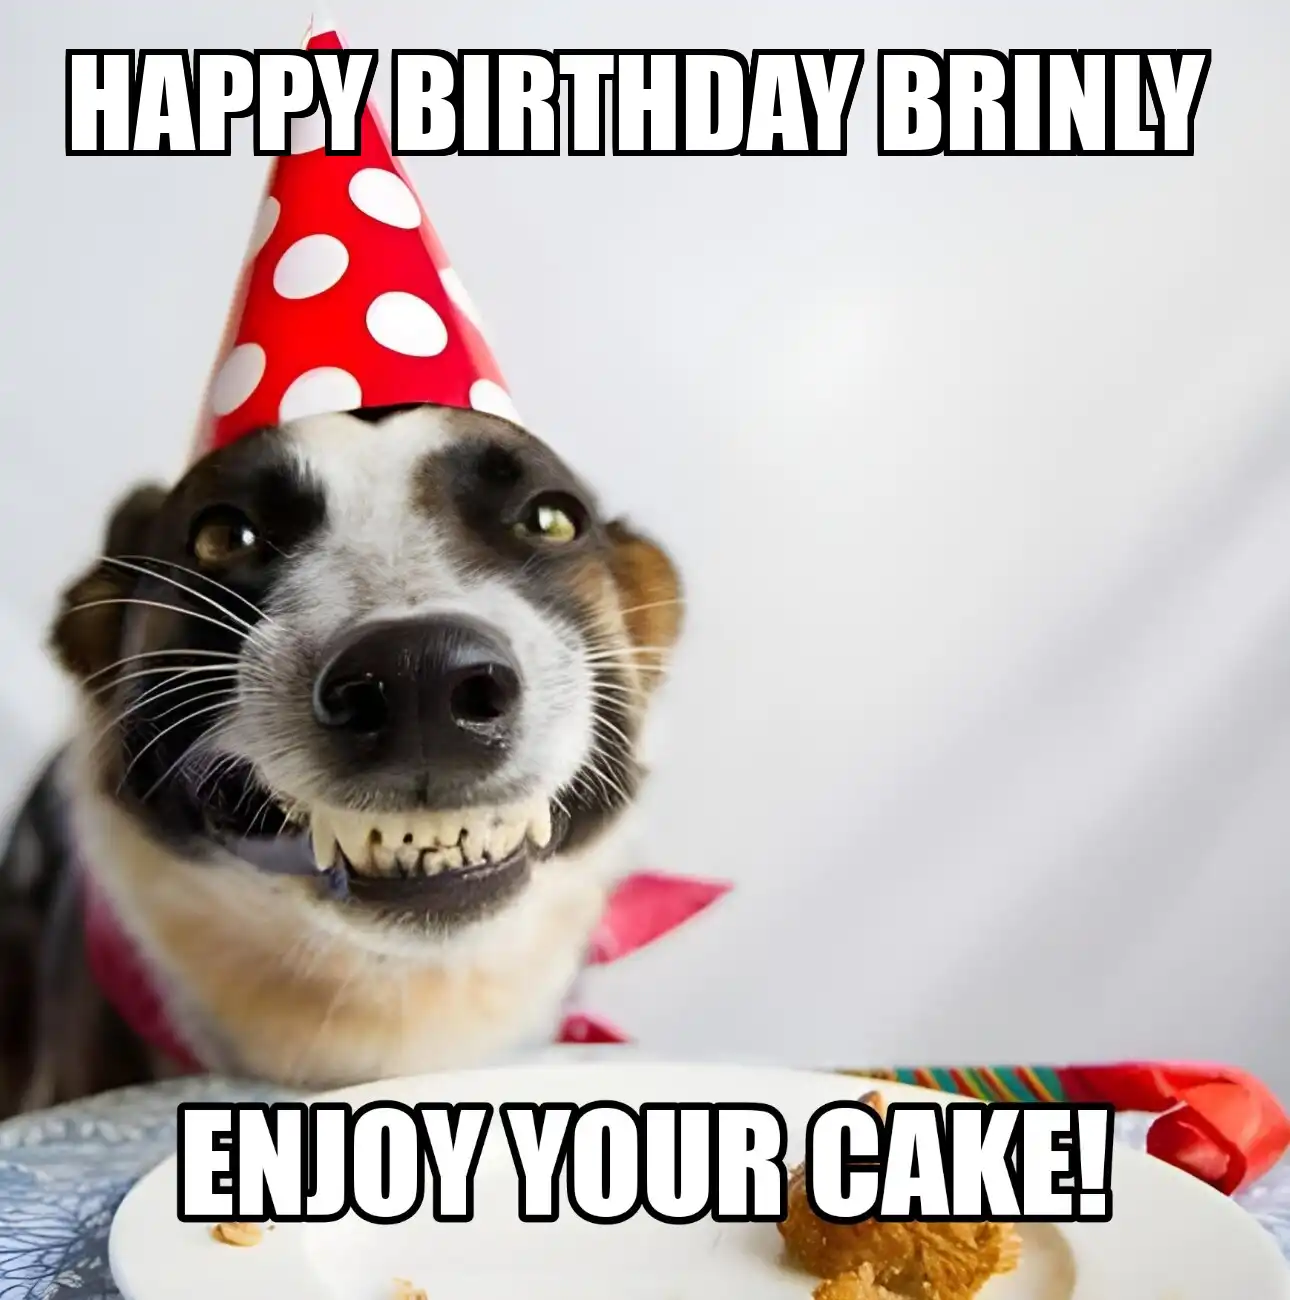 Happy Birthday Brinly Enjoy Your Cake Dog Meme